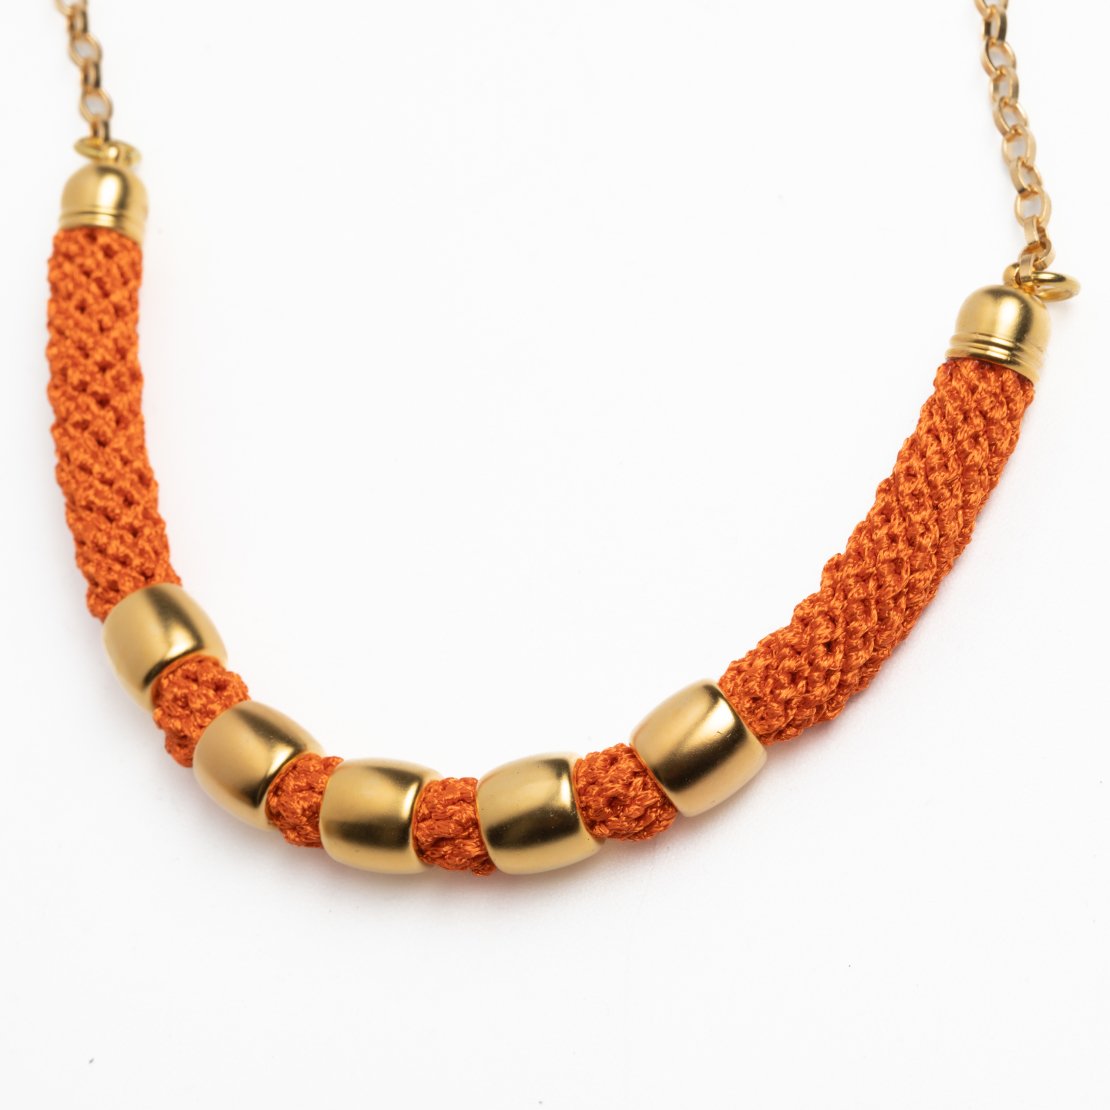 Orange and Gold Five Rings Necklace - Avishag